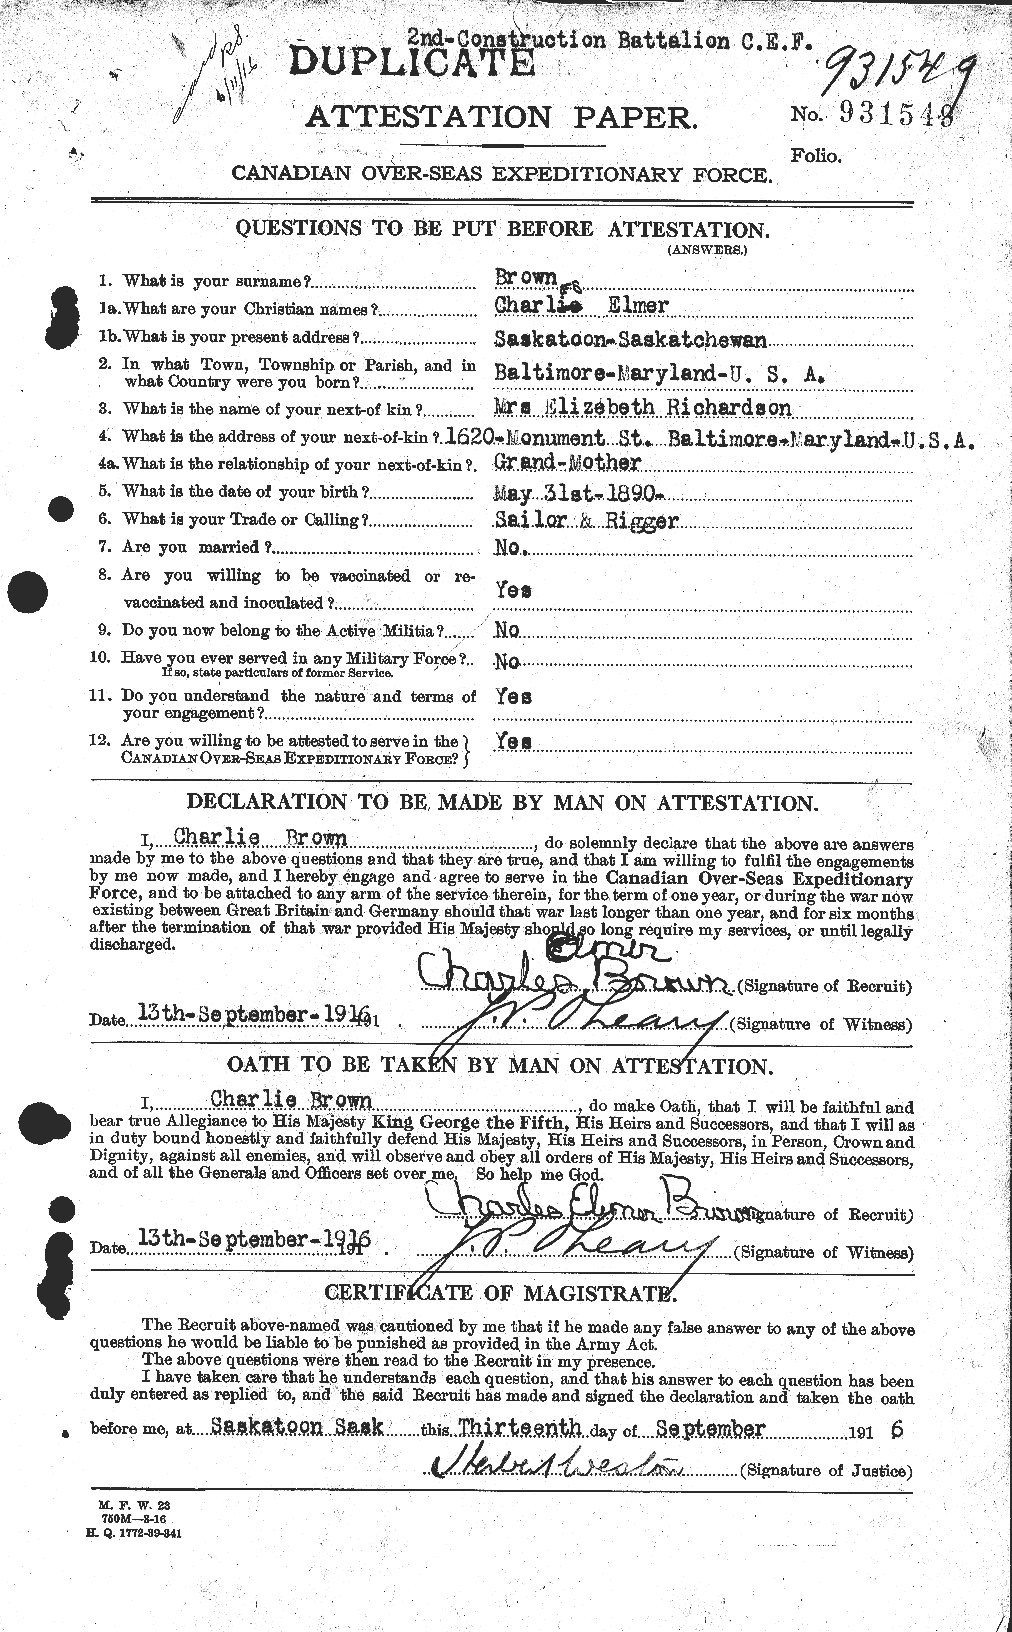 Dossiers du Personnel de la Première Guerre mondiale - CEC 264407a